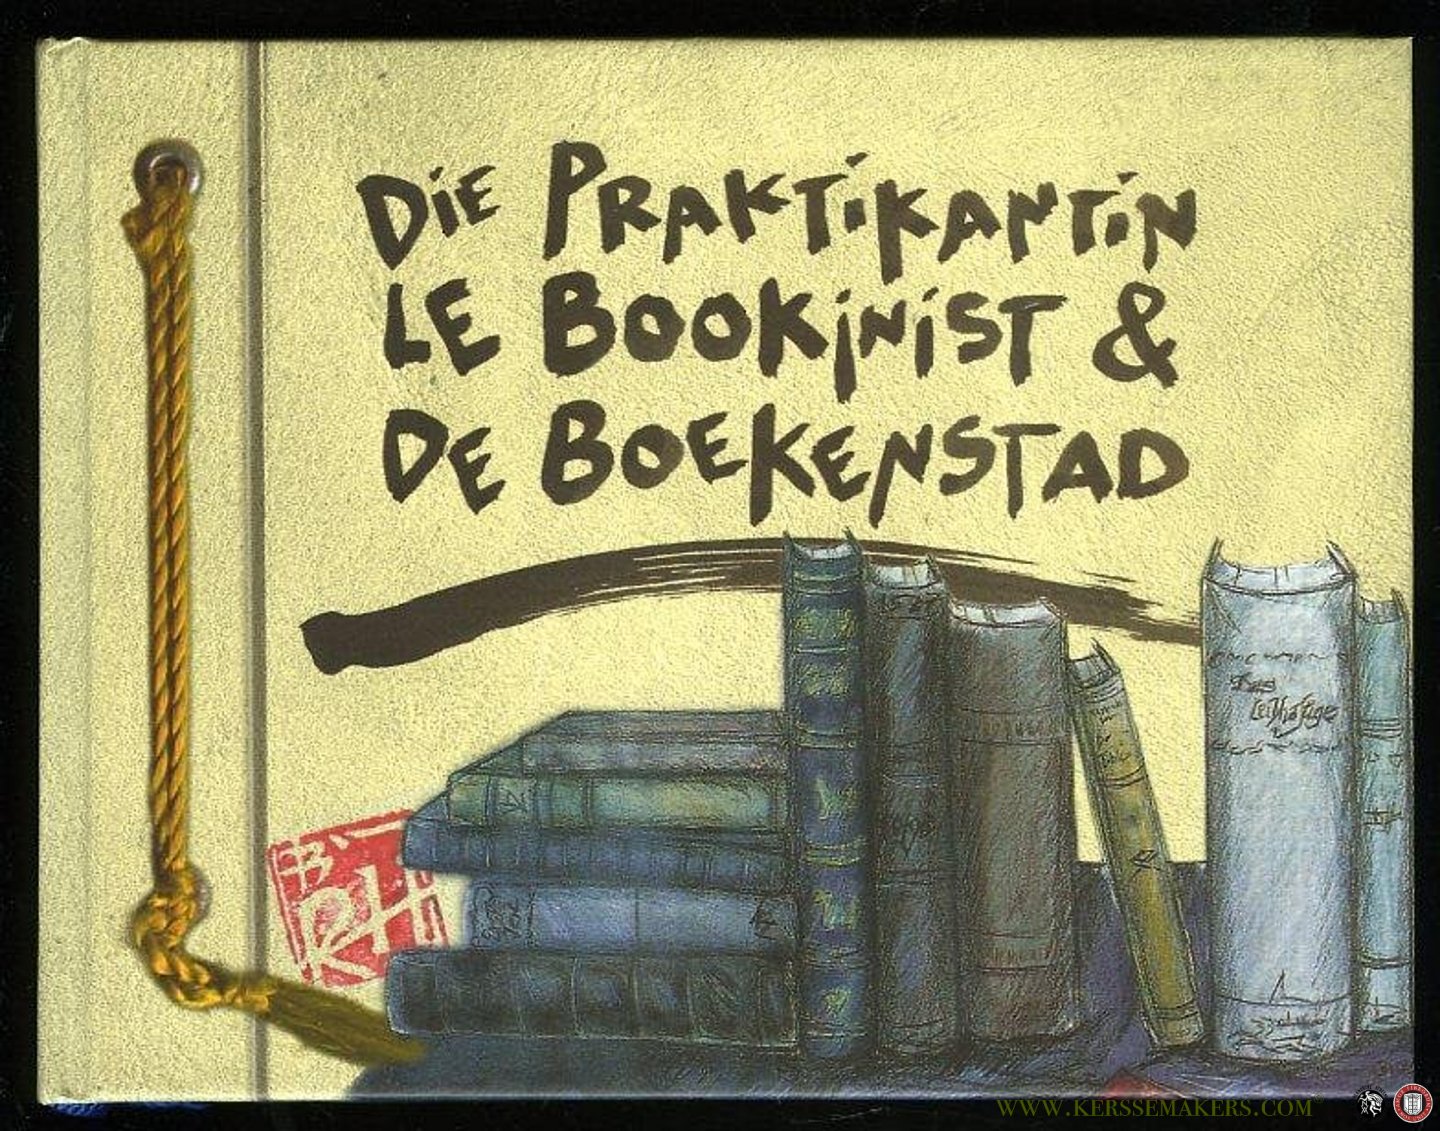 HEEKE, Rainer - Die Praktikantin, Le Bookinist & De Boekenstad (Breedevoort)